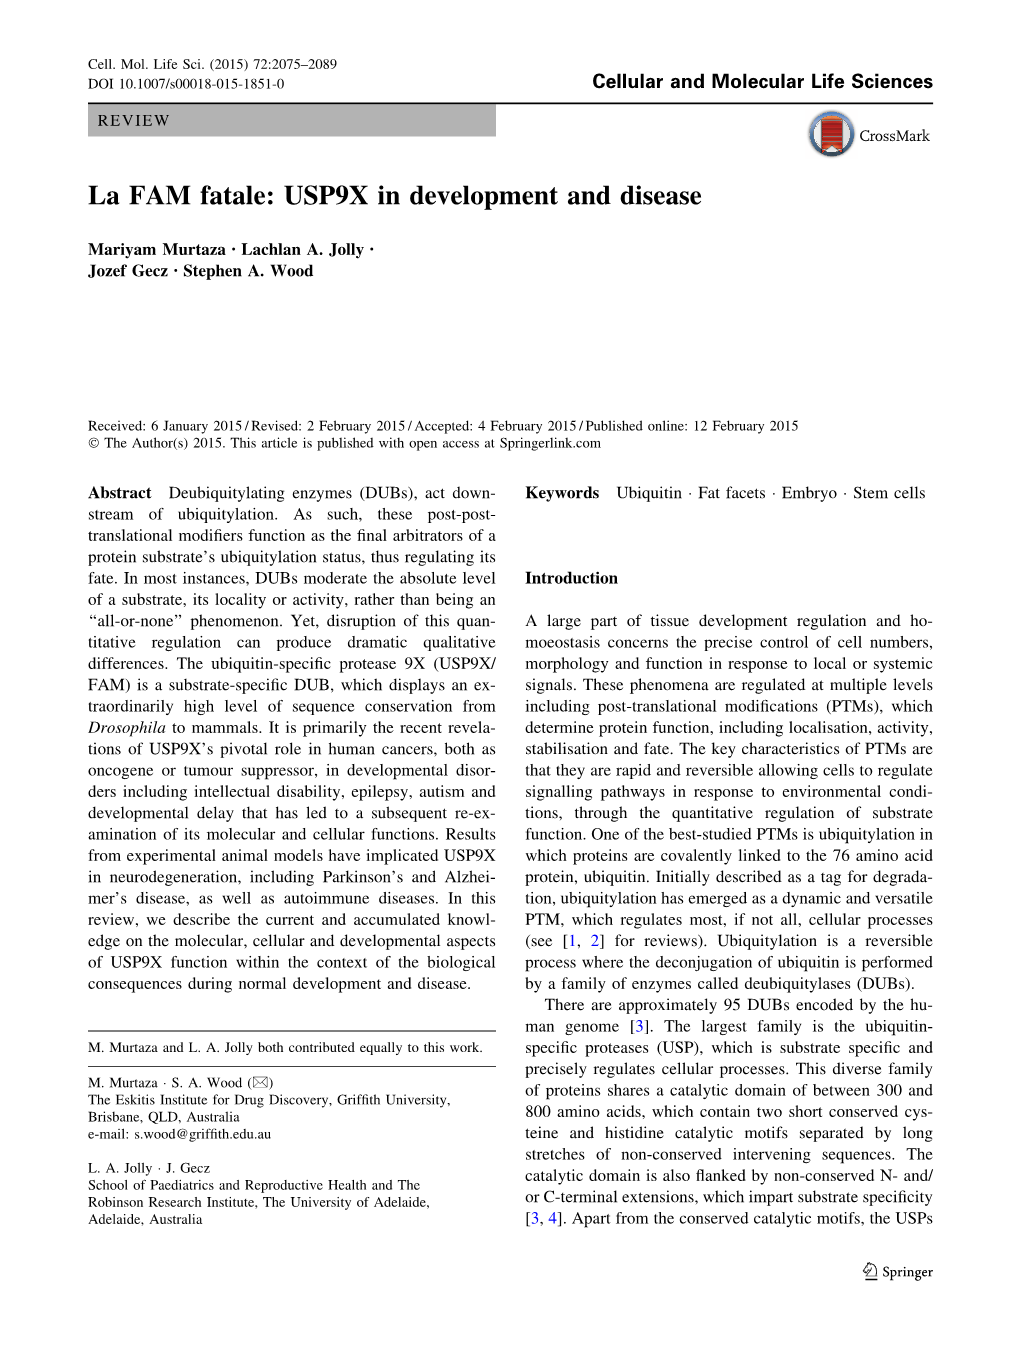 La FAM Fatale: USP9X in Development and Disease